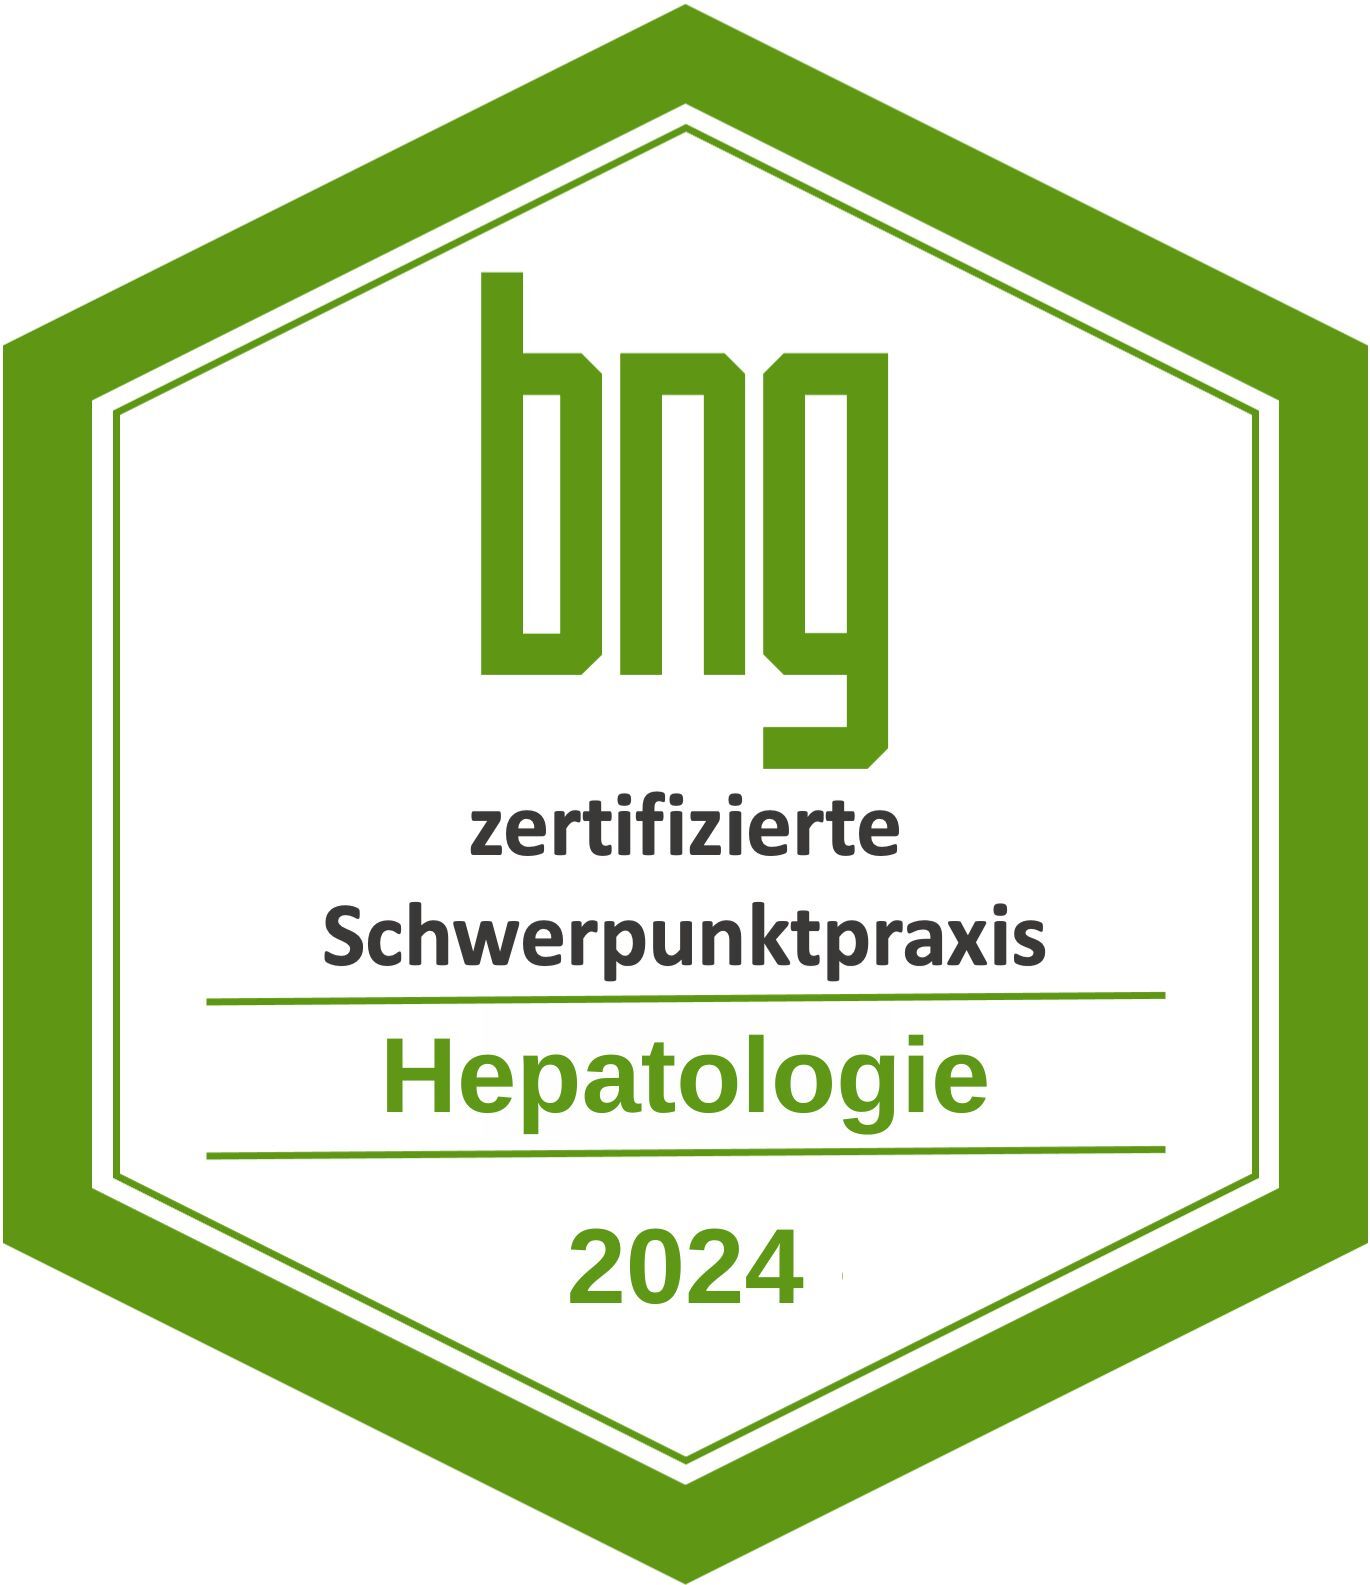 2024_Hepatologie.jpg